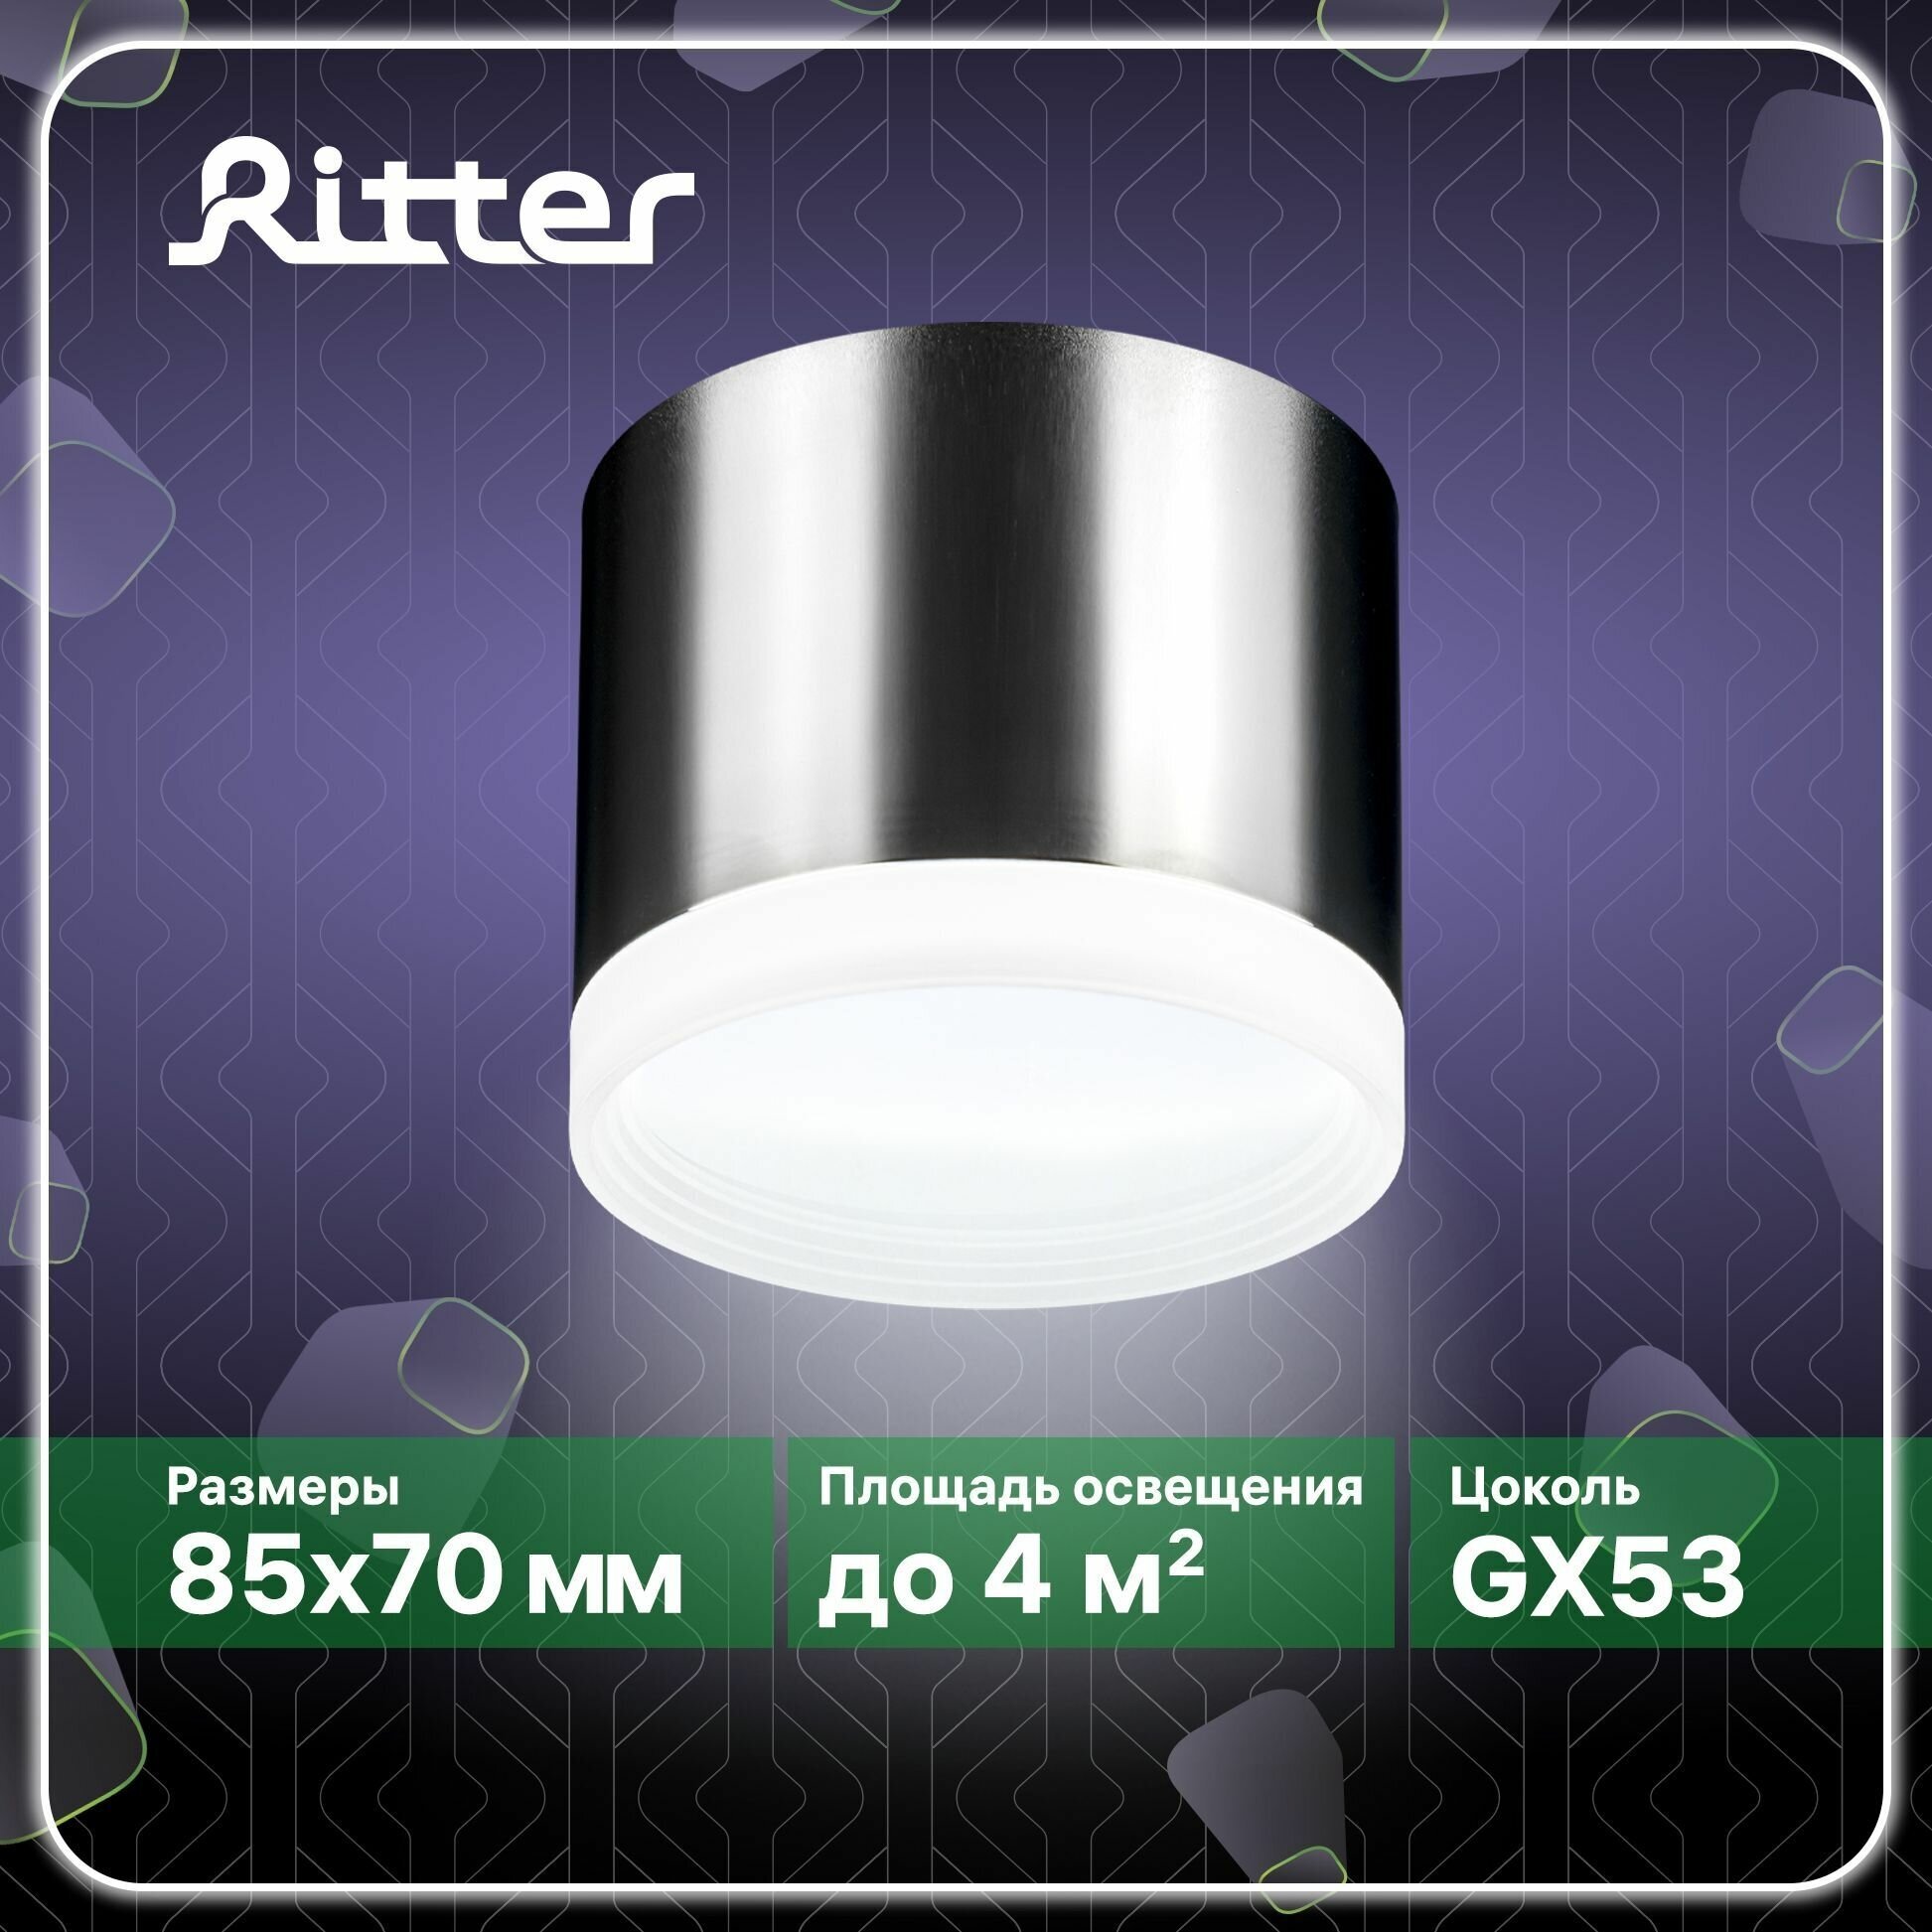 Светильник накладной Arton, цилиндр, 85х70, GX53, аллюминий/стекло, хром, Ritter - фотография № 1